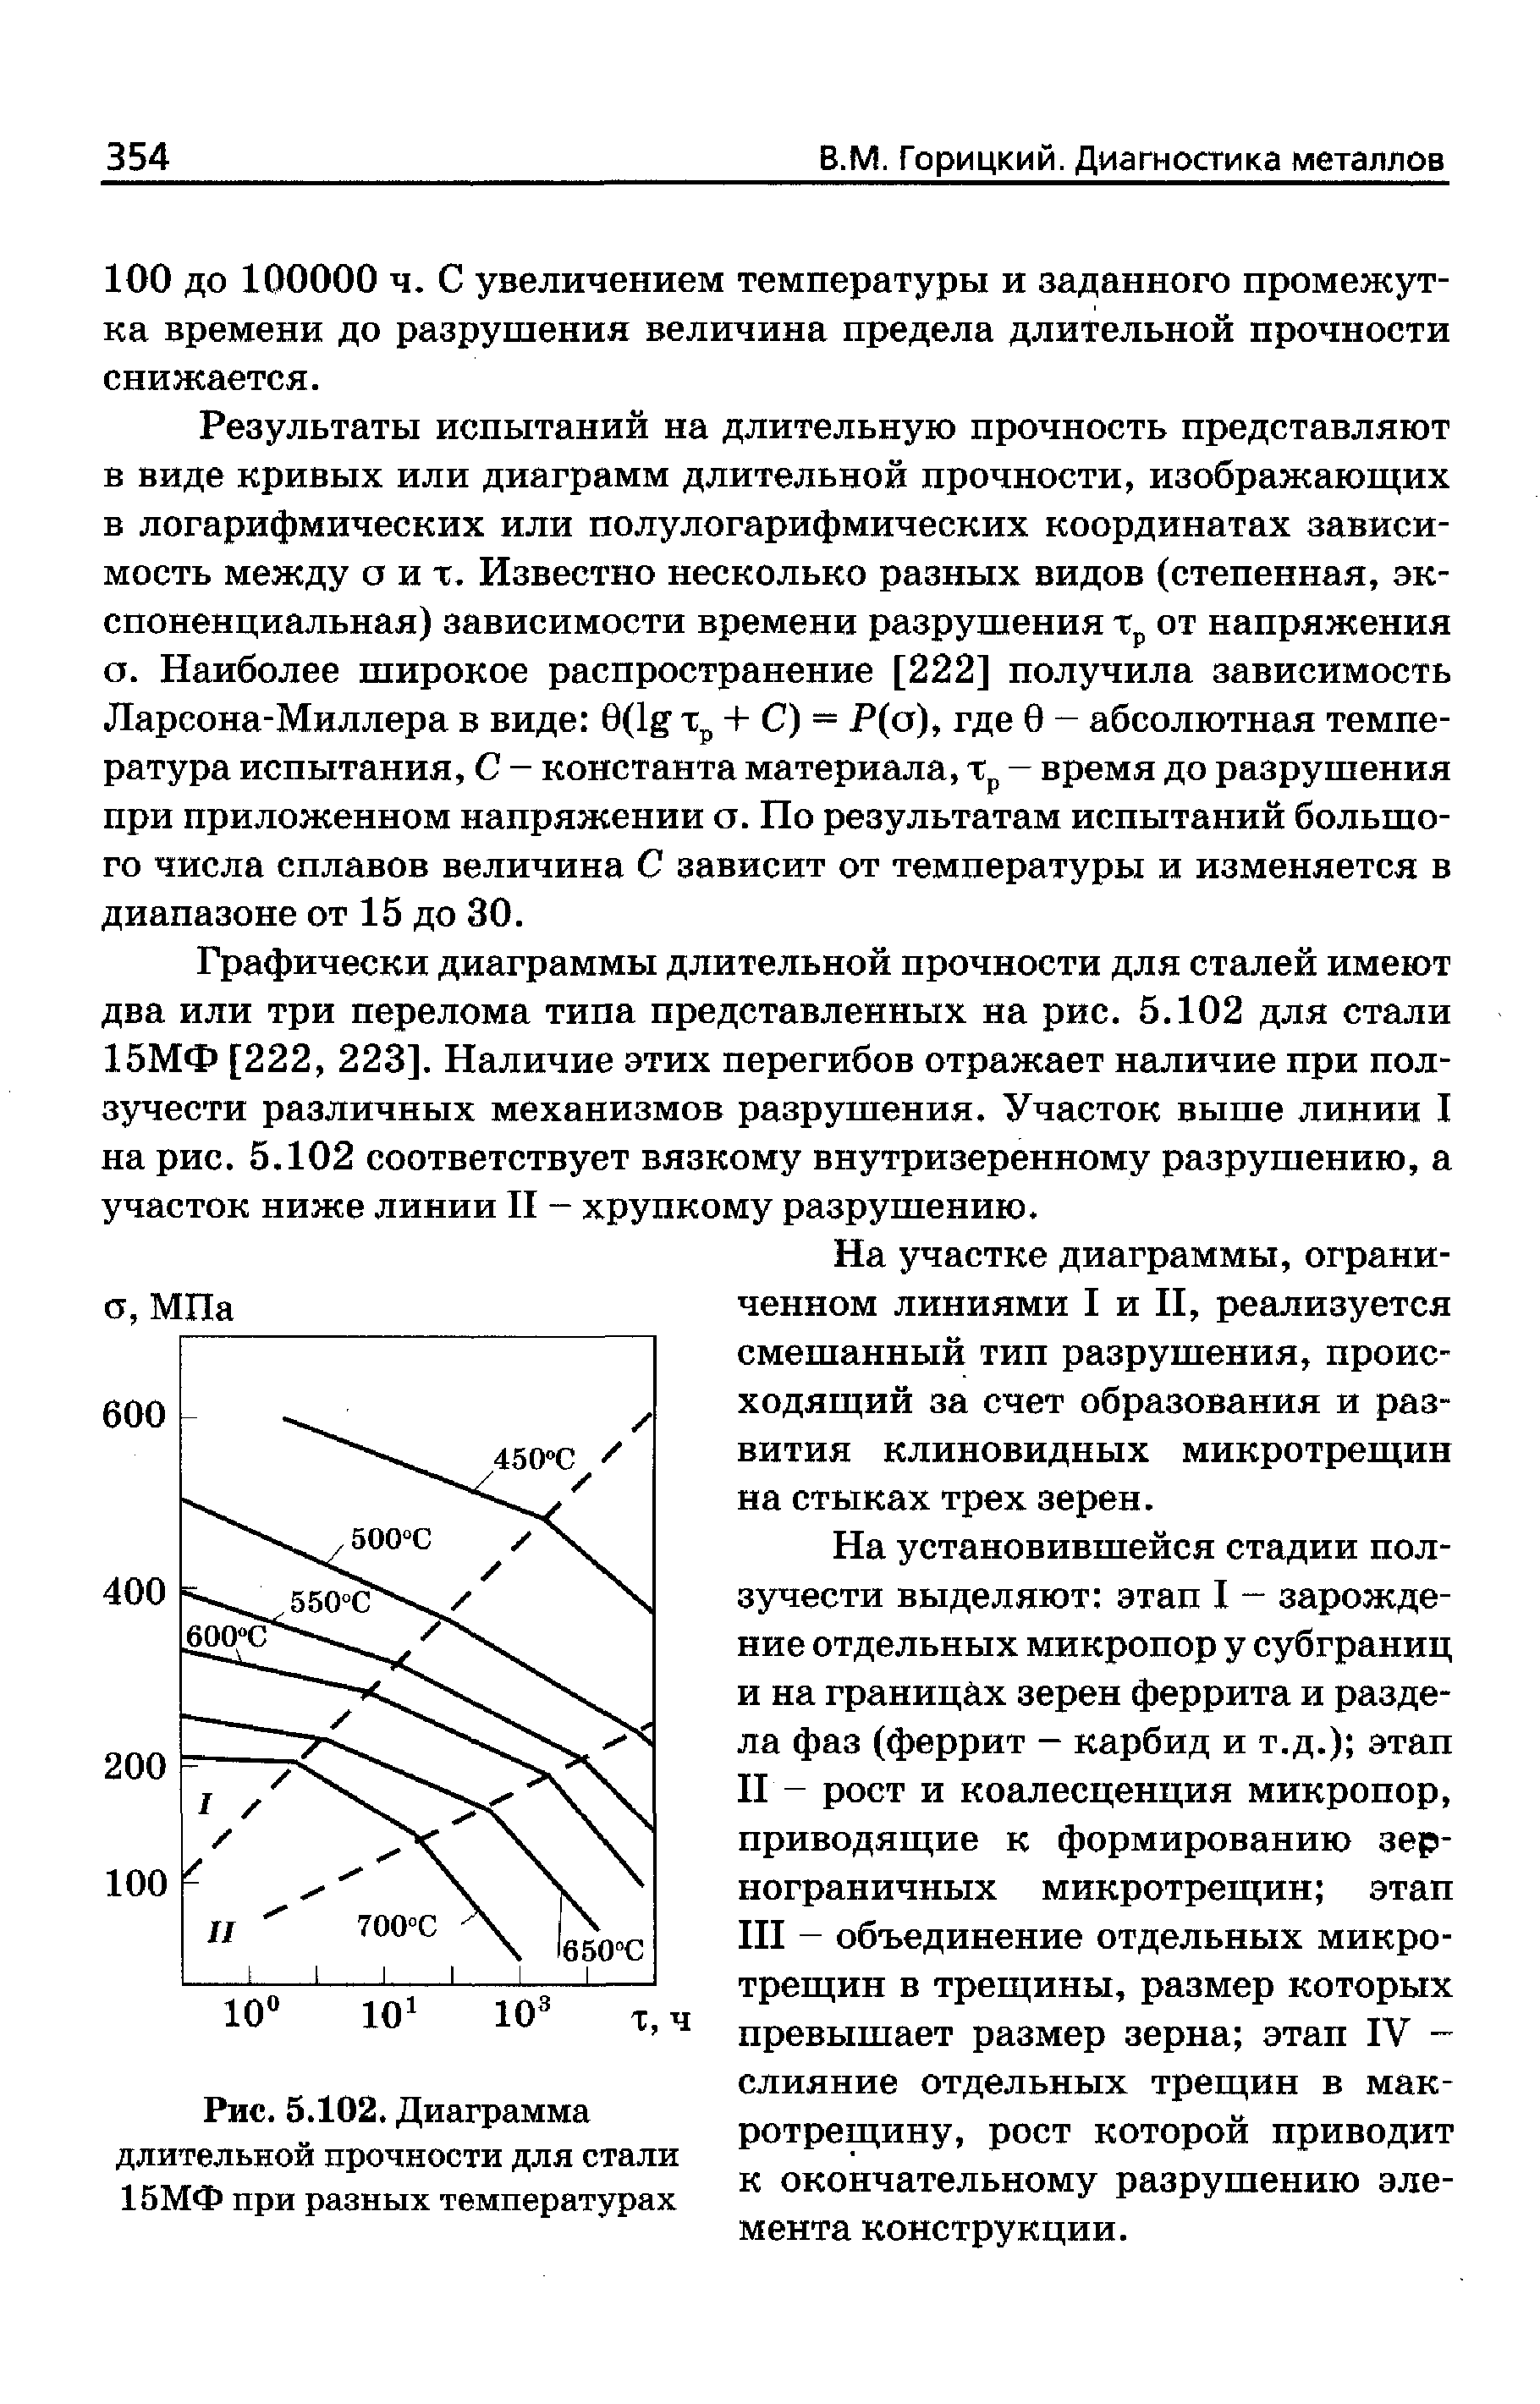 Рис. 5.102, Диаграмма длительной прочности для стали 15МФ при разных температурах
